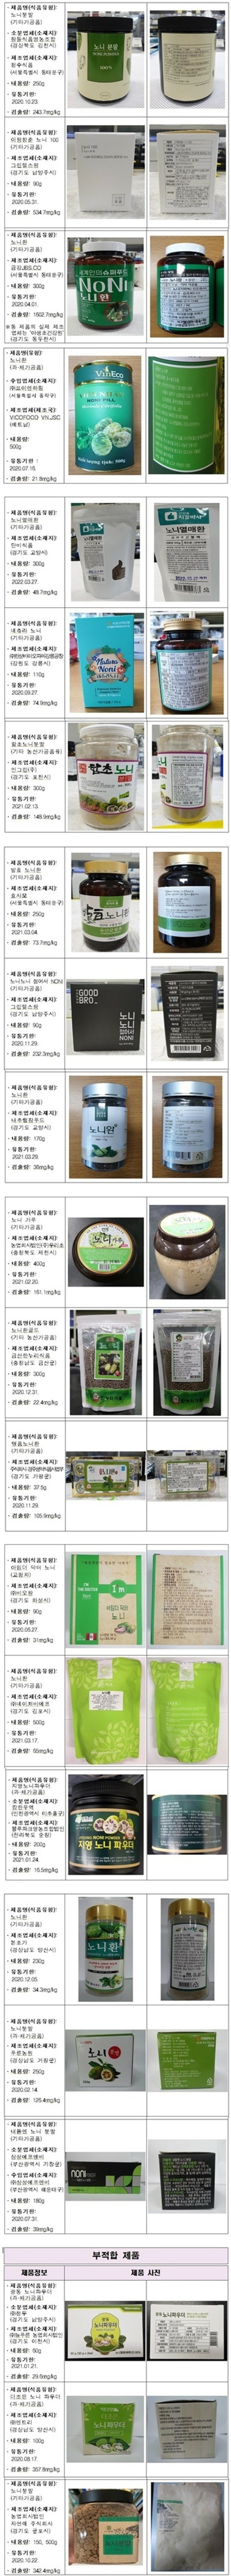 식약청 , 노니 중금속 검출 22개 제품 공개